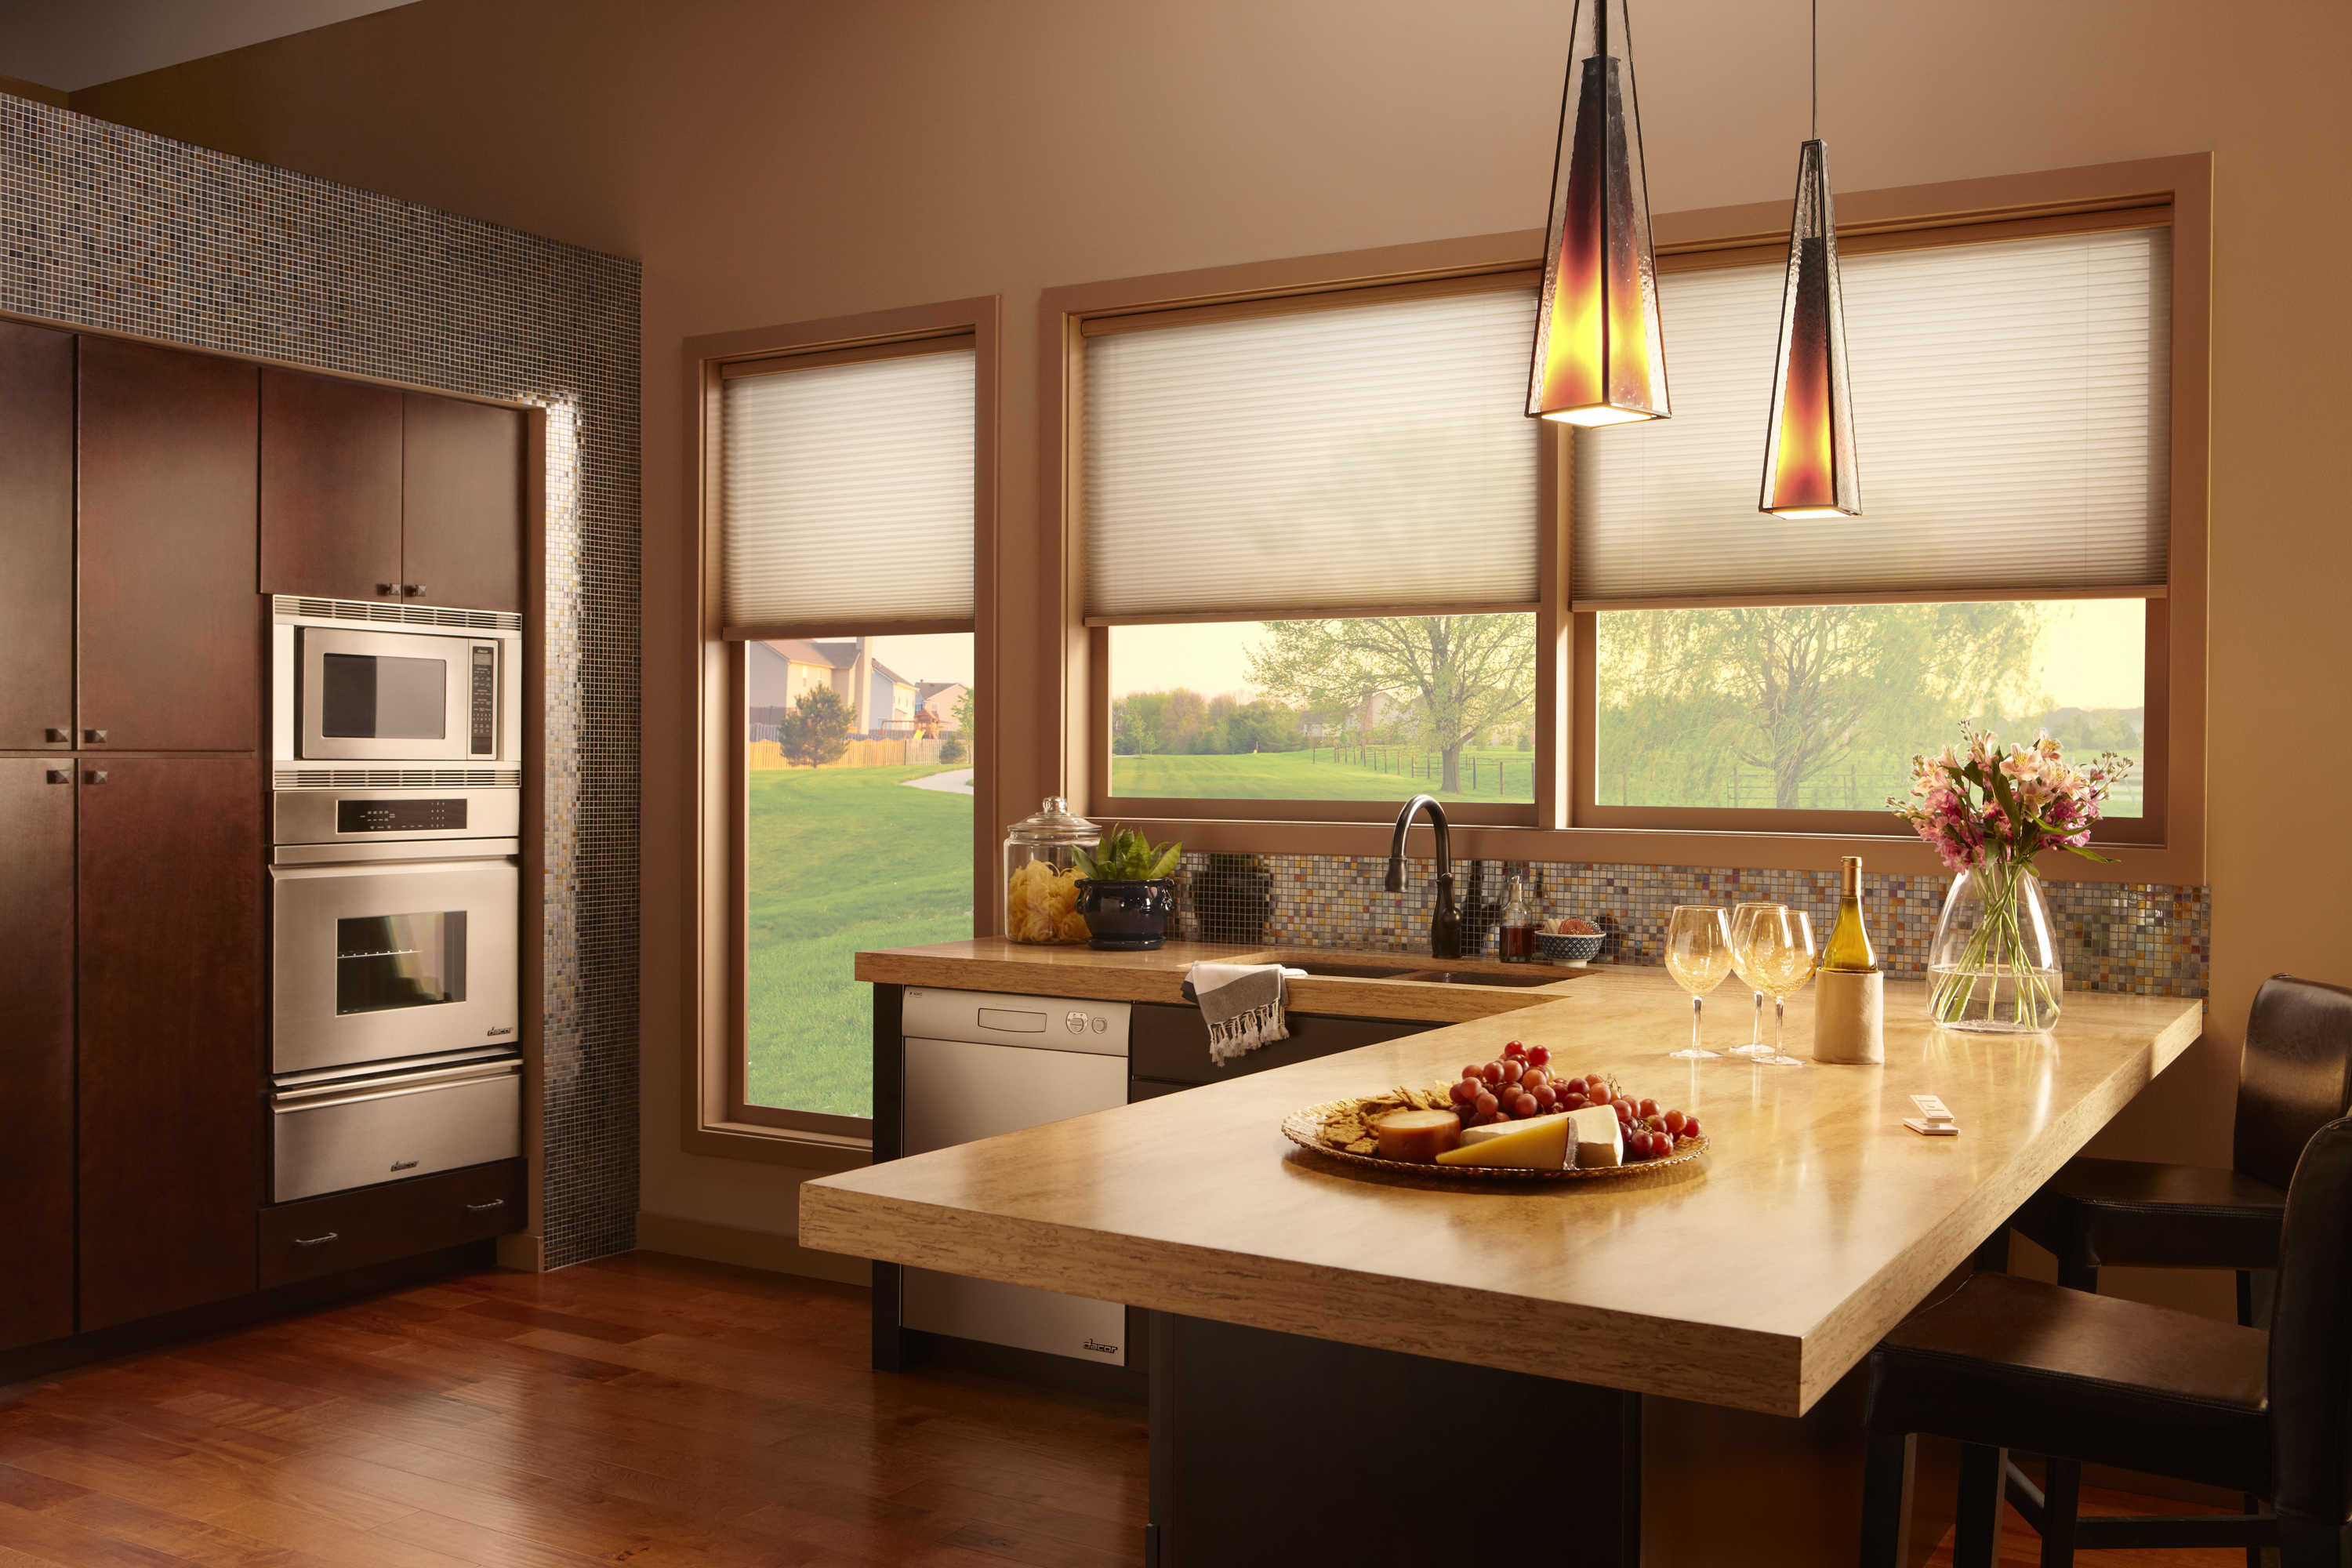 Окна на кухне купить. Рулонные шторы на кухню. Рулонные шторы в интерьере кухни. Красивые жалюзи на кухню. Рулонные шторы в интерьере.